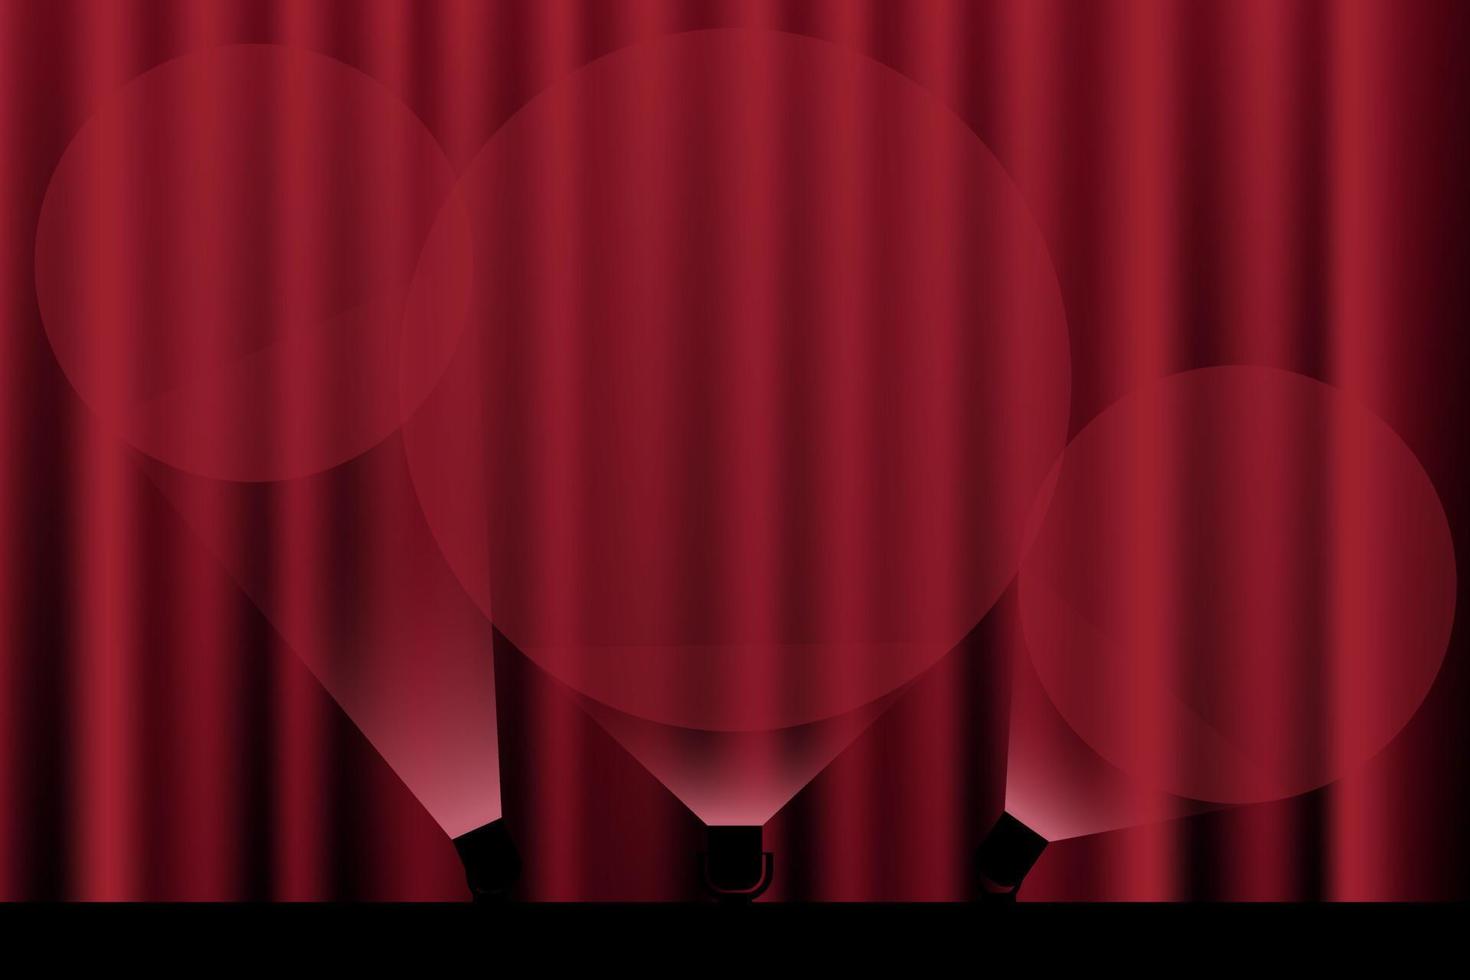 holofotes brilham na cortina vermelha plissada no teatro vetor